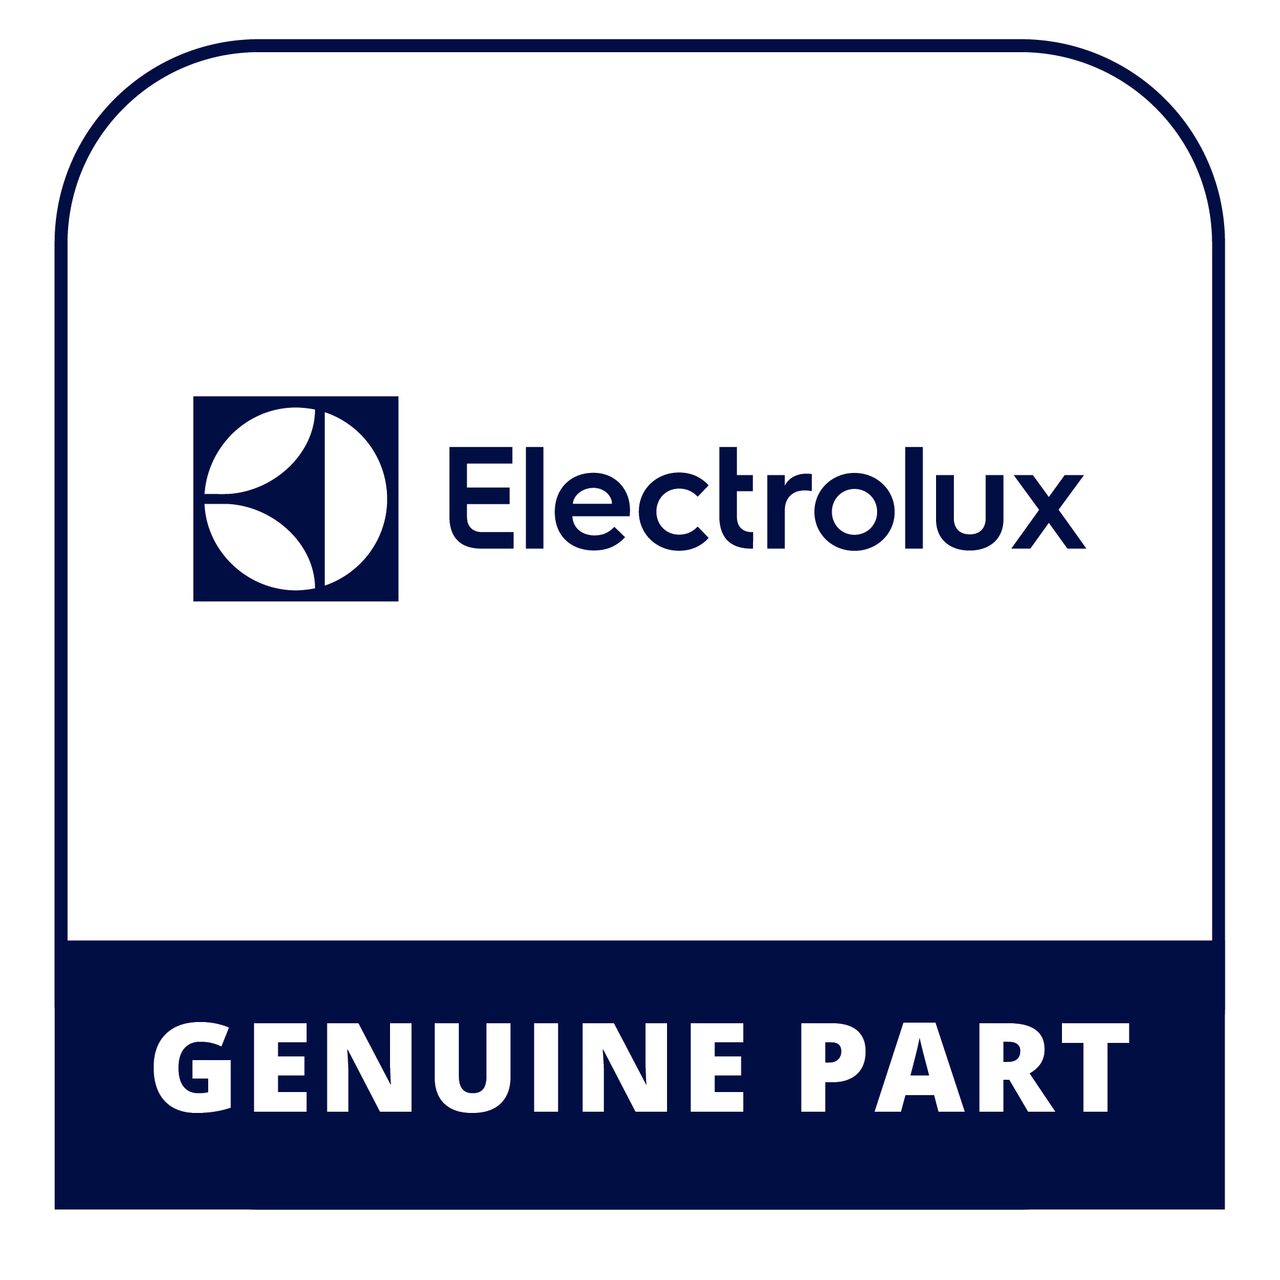 Frigidaire - Electrolux 316261800 - Cap - Genuine Electrolux Part